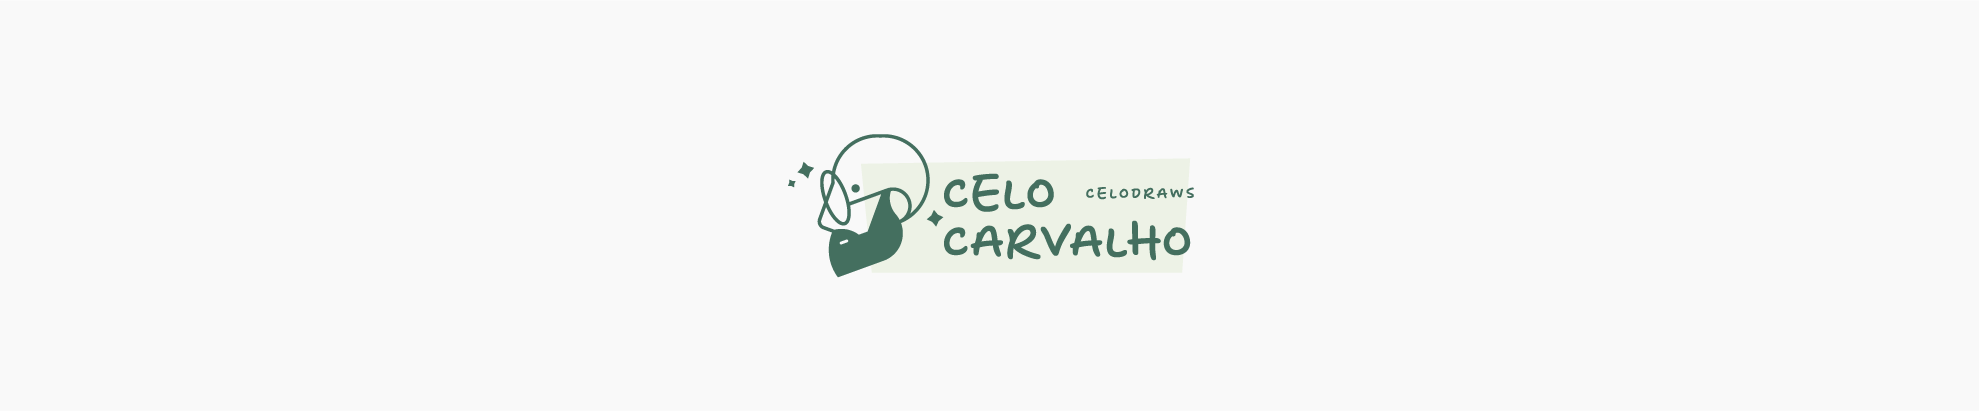 Celo Carvalho 的個人檔案橫幅